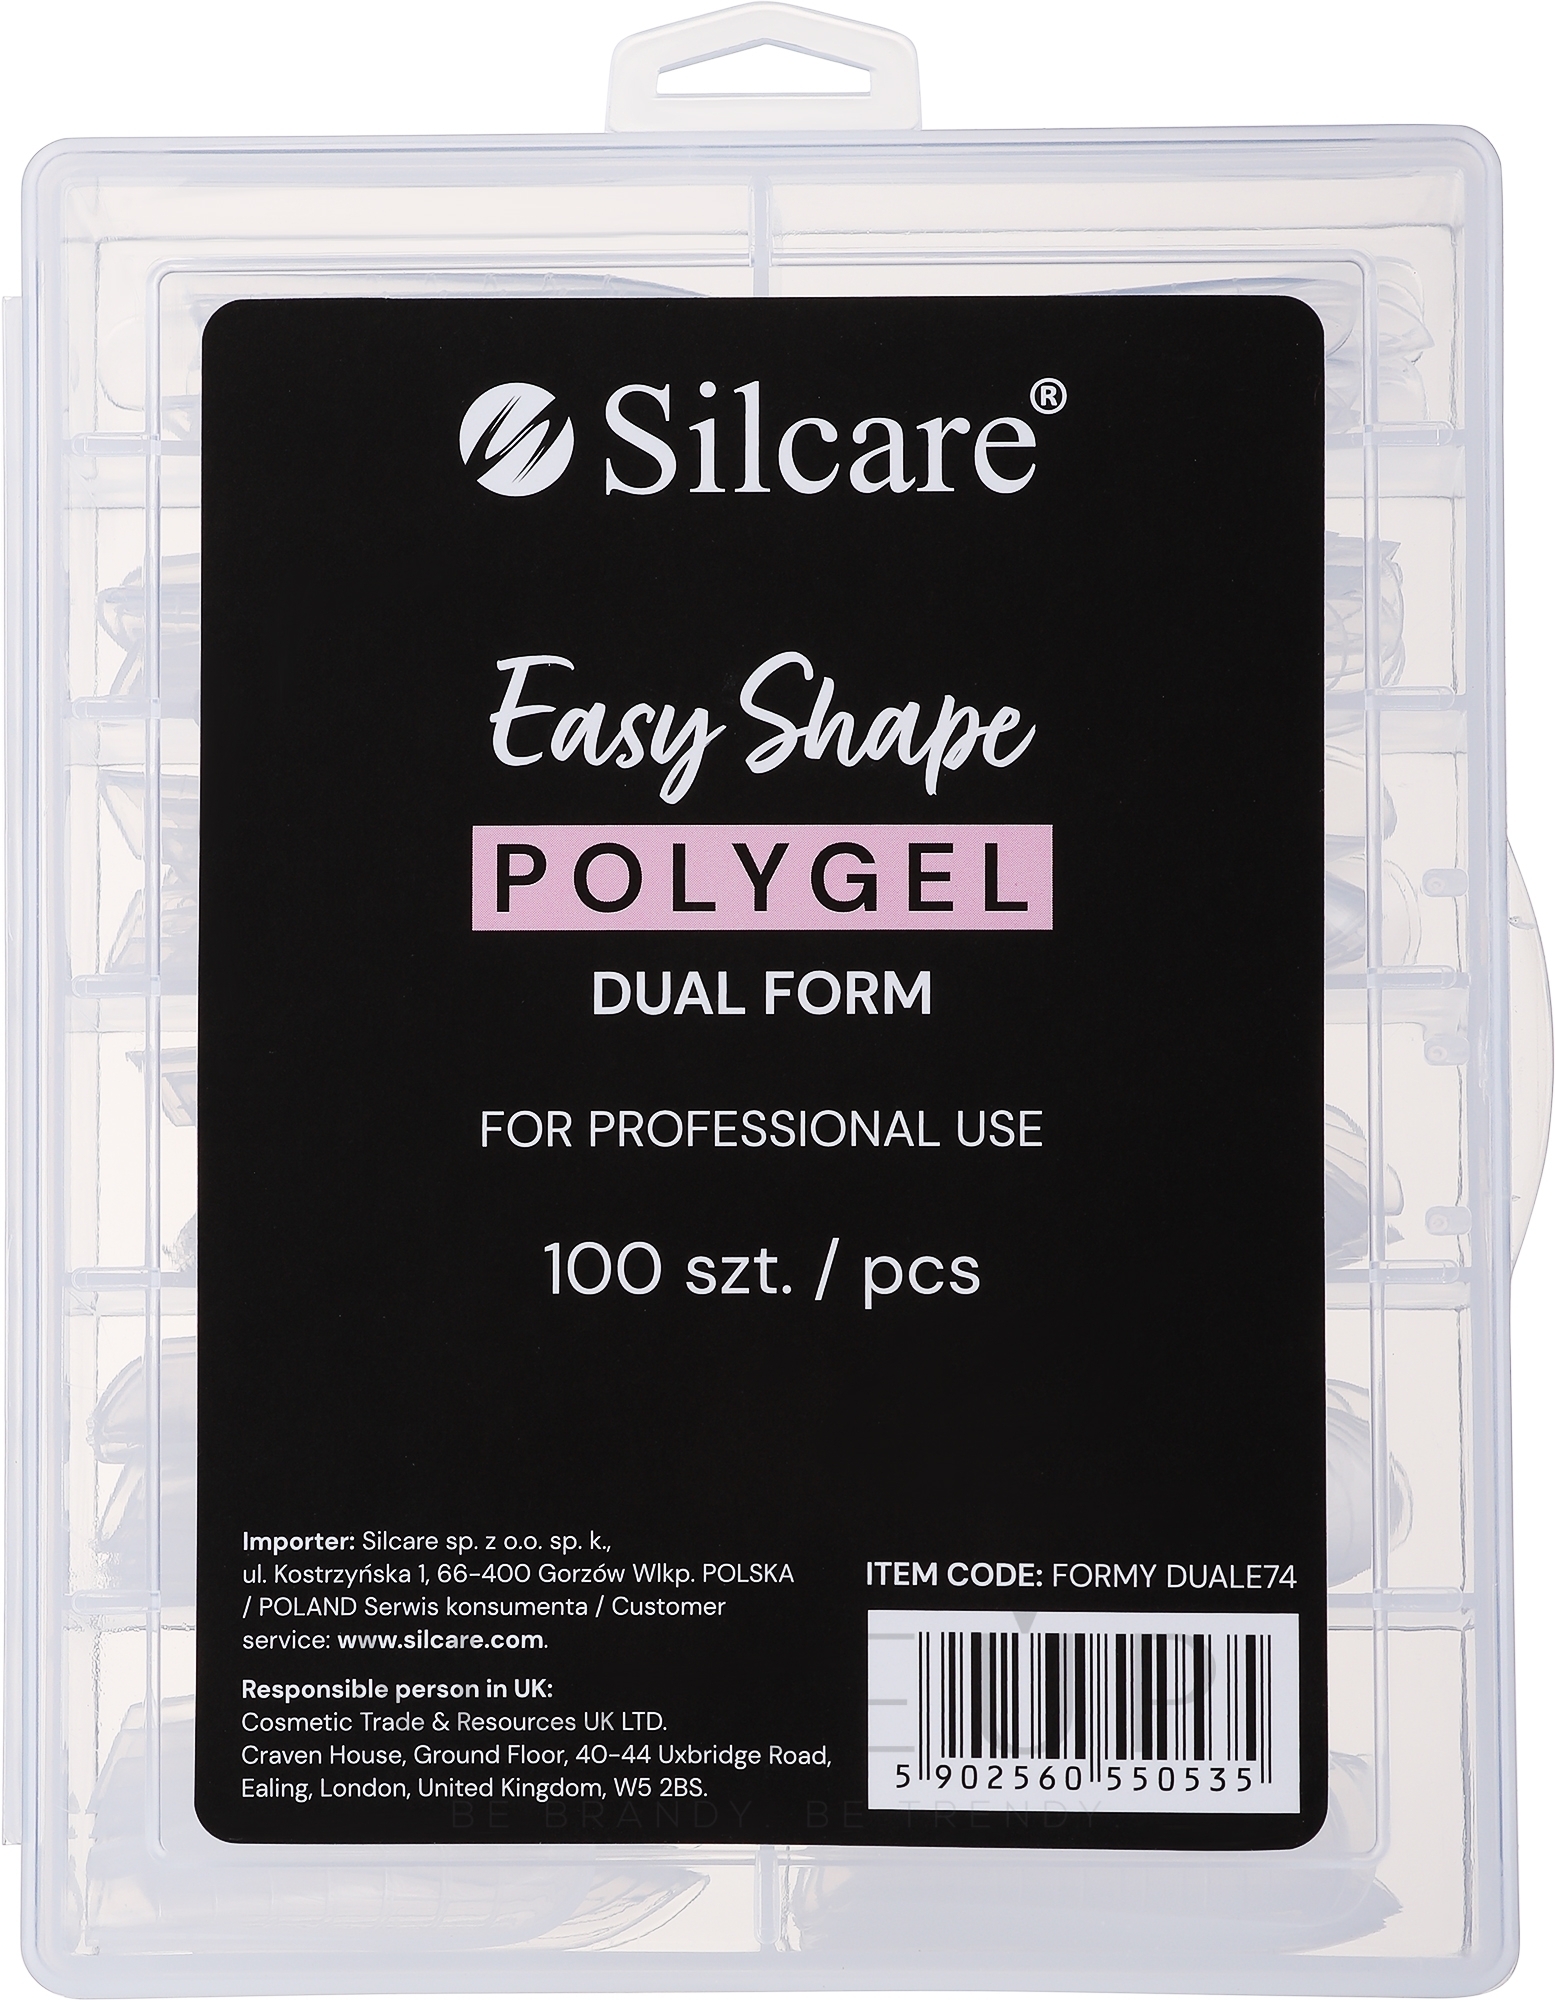 Wiederverwendbare Nagelverlängerungsspitzen - Silcare Easy Shape Polygel Dual Form — Bild 100 St.